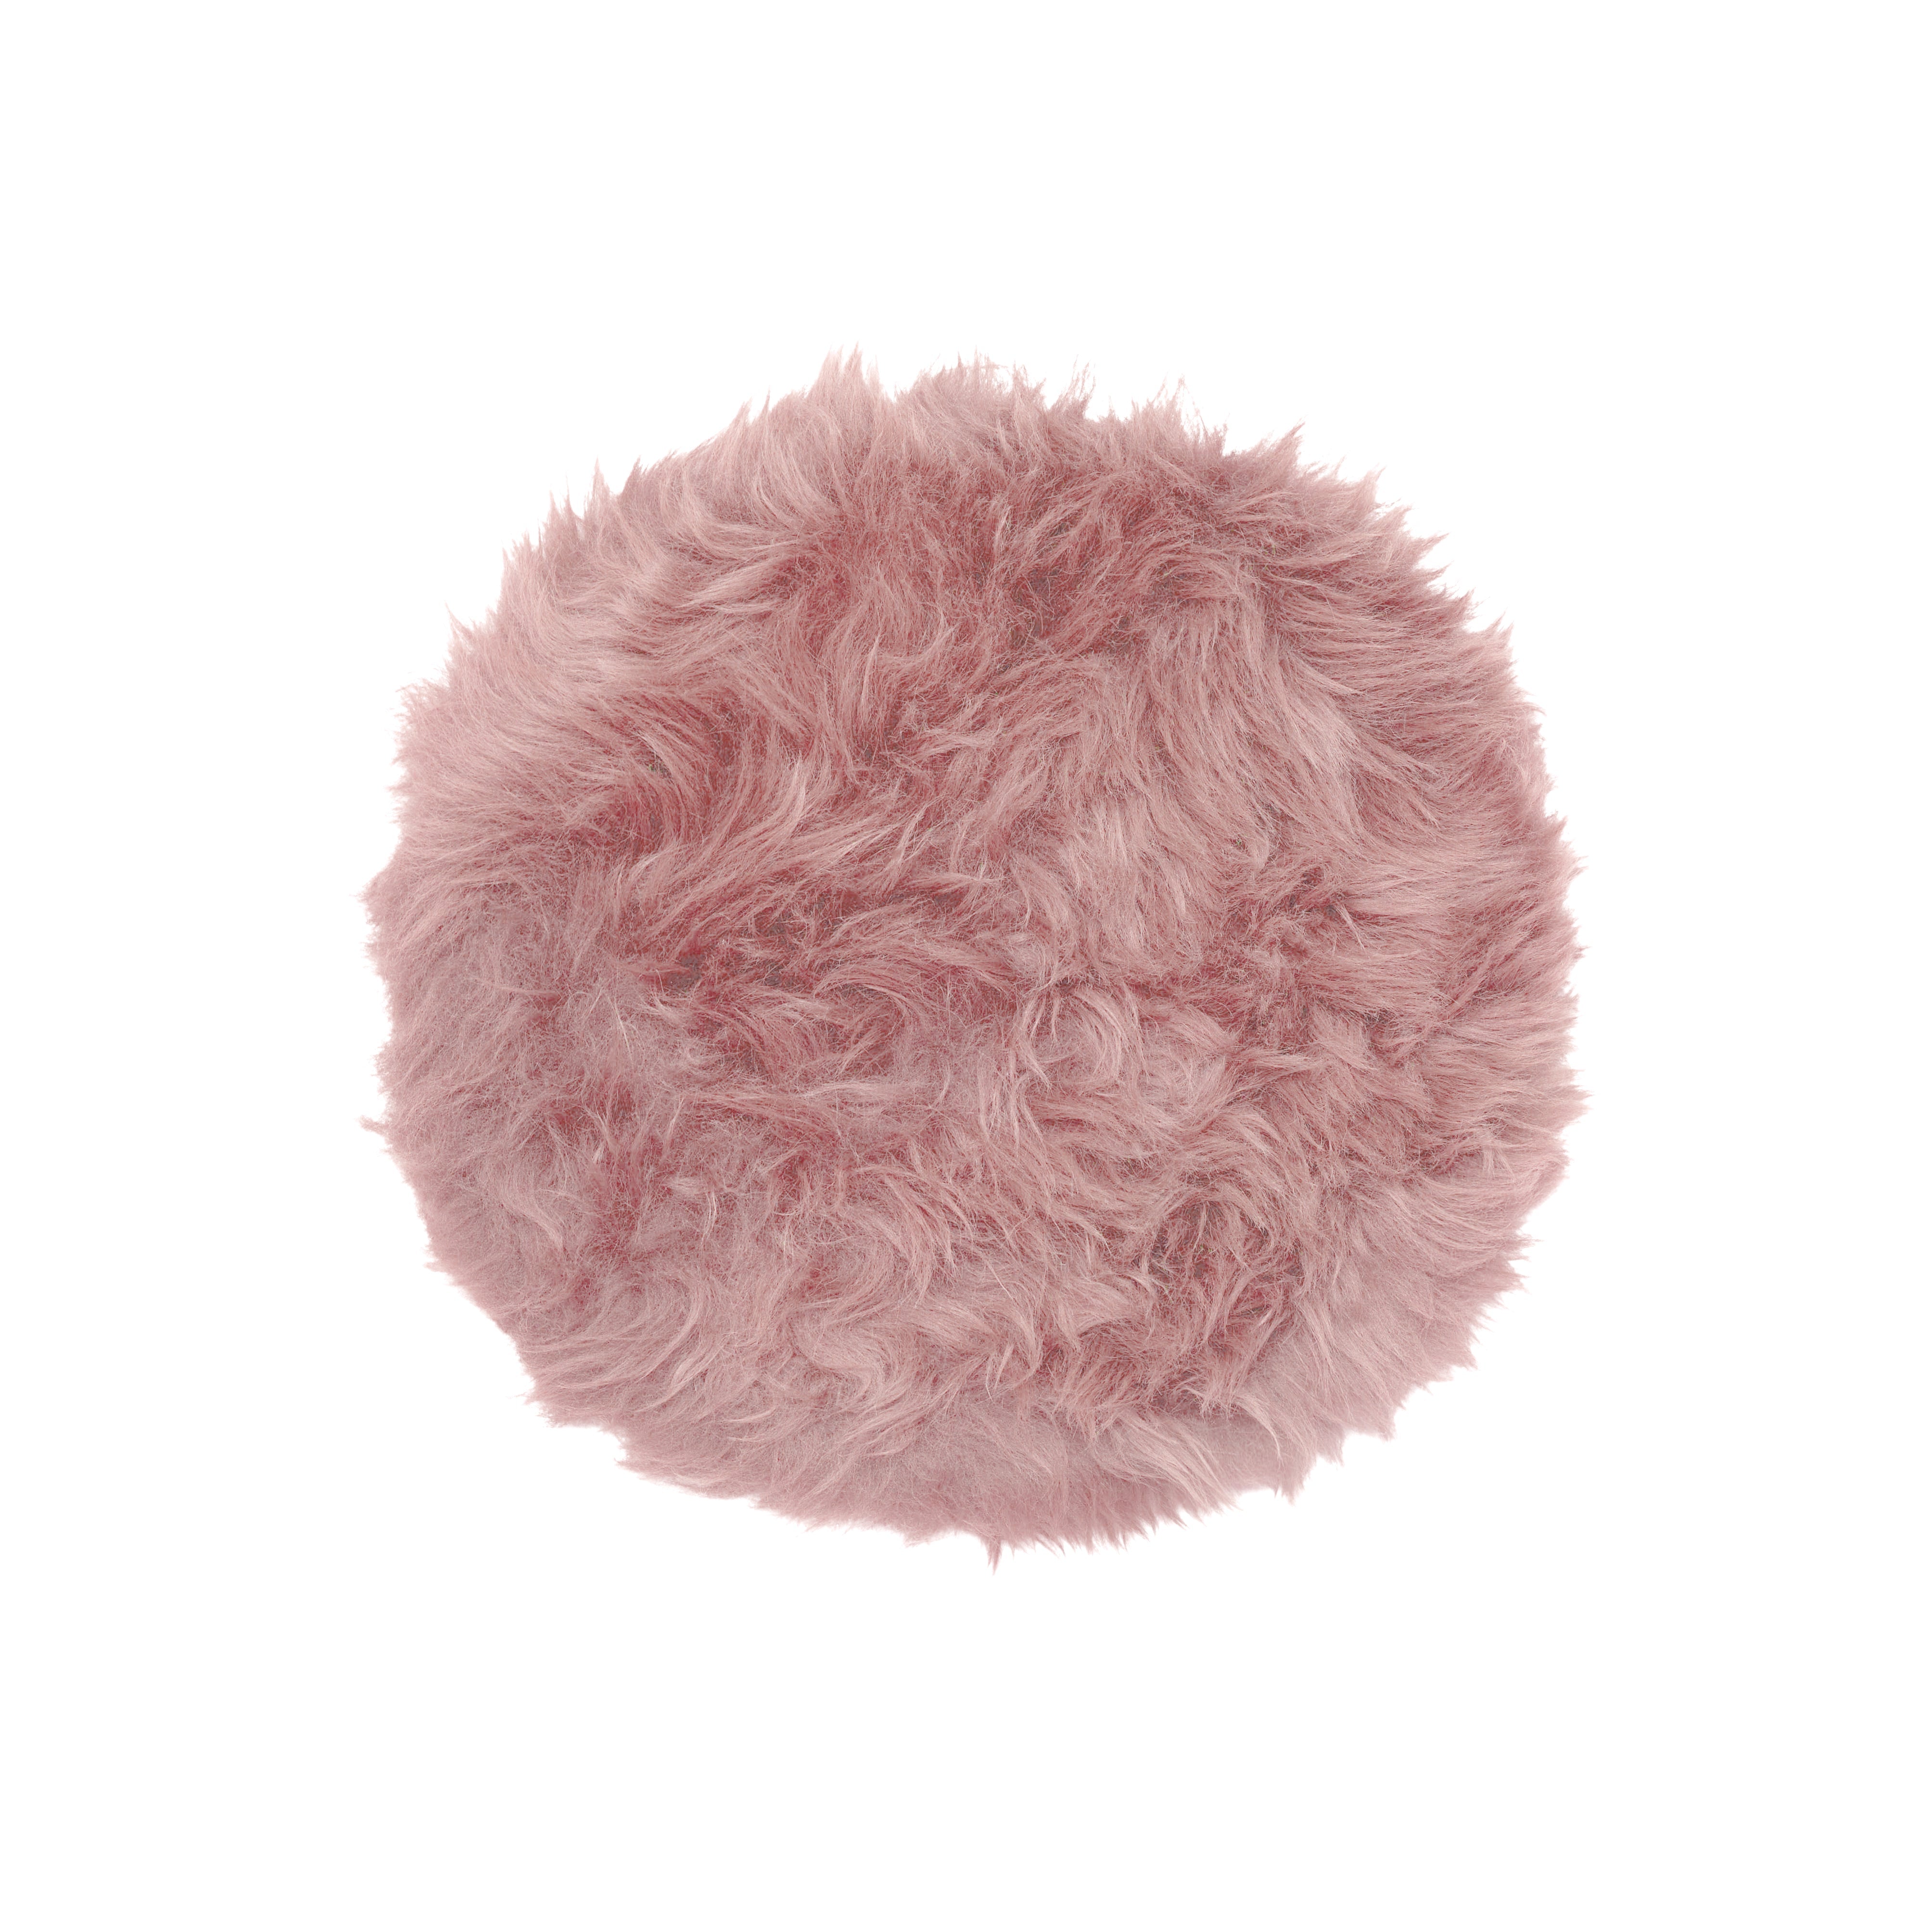 Pink genuine sheepskin chair pad | Round